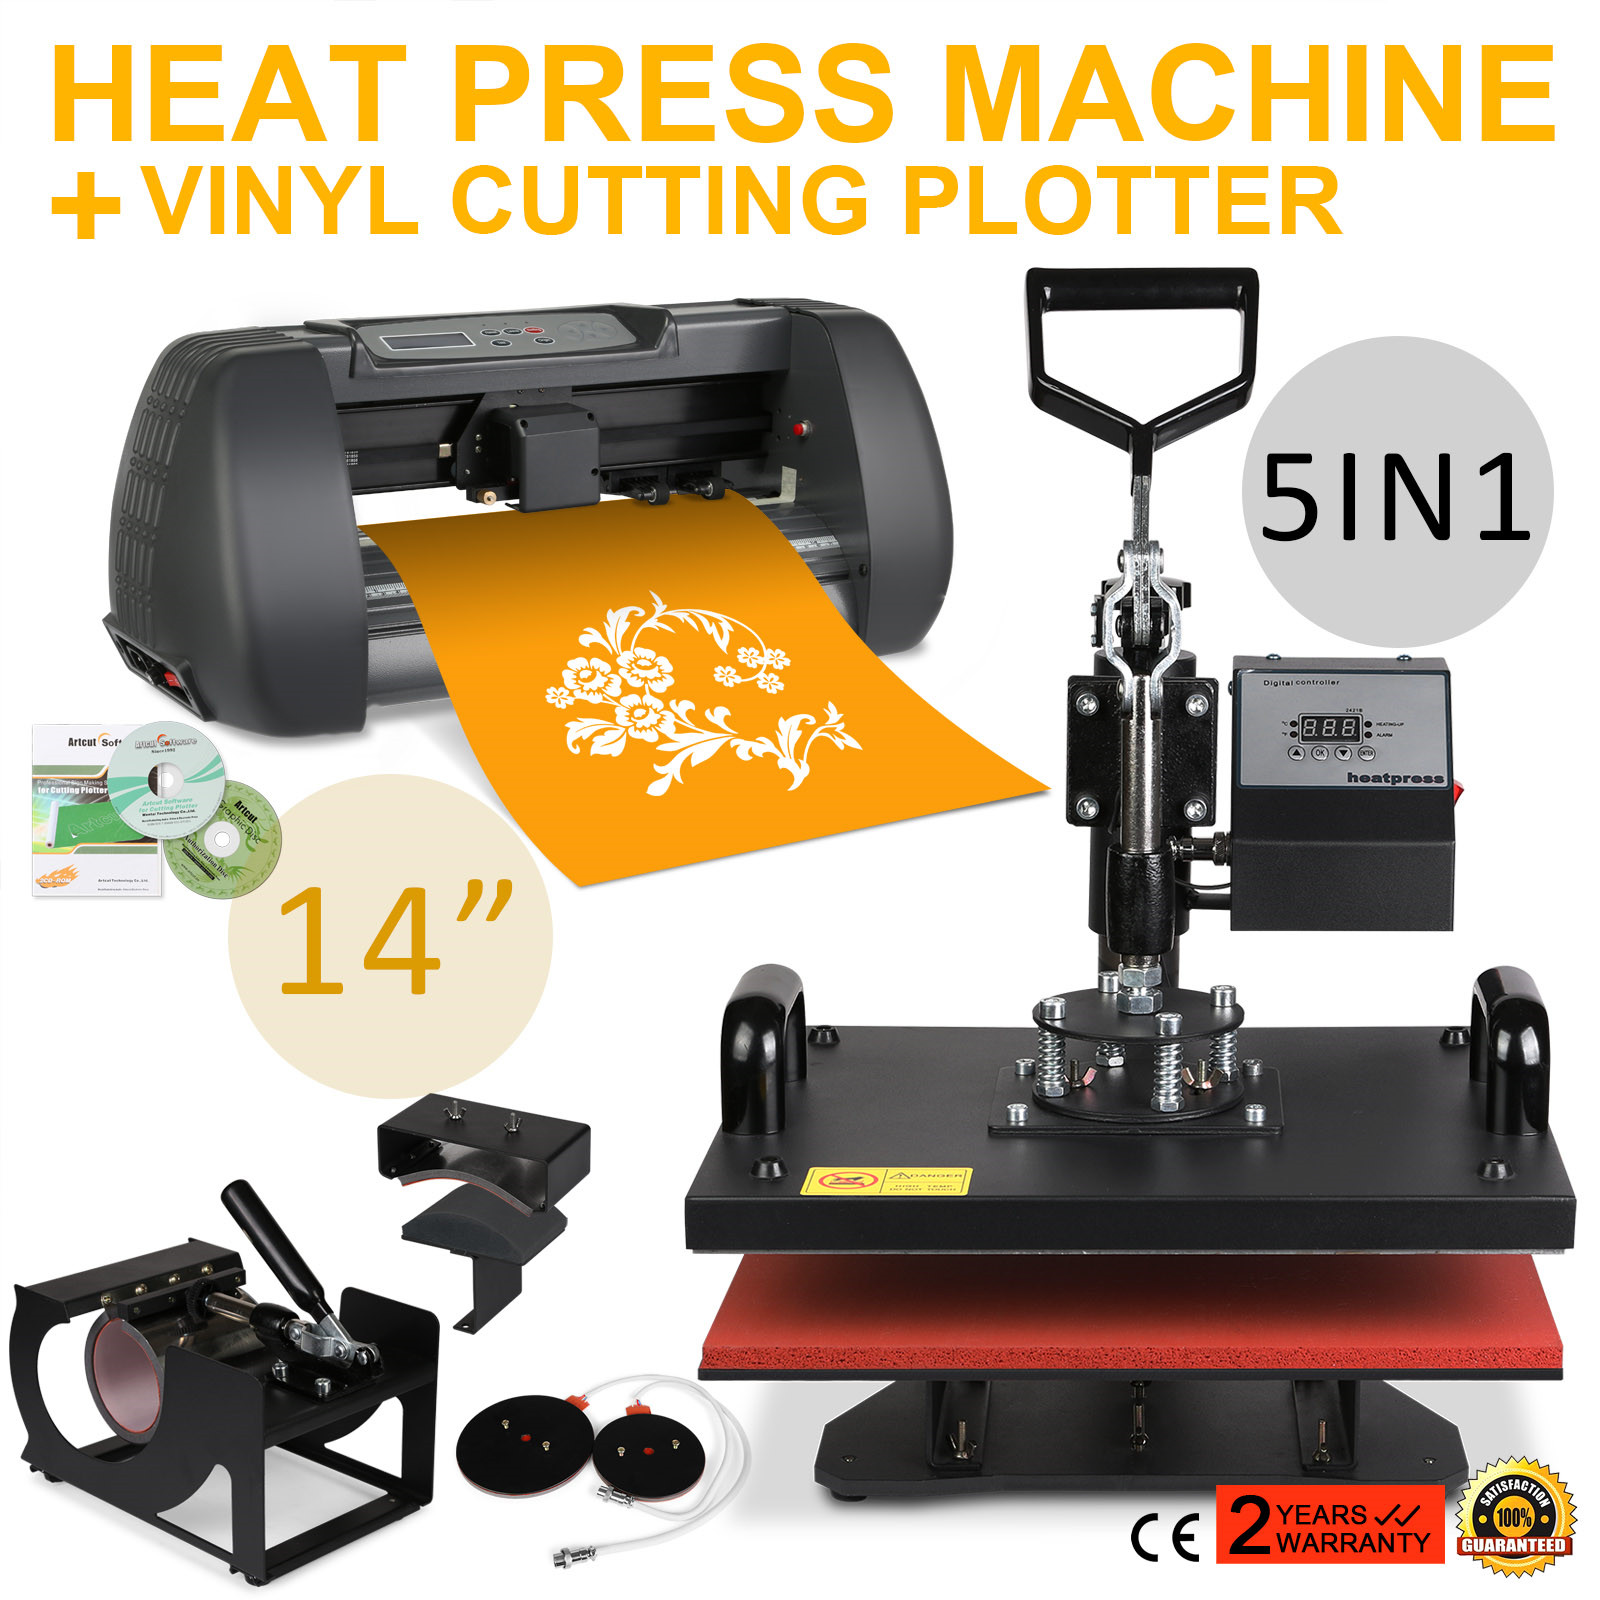 heat press and vinyl cutter